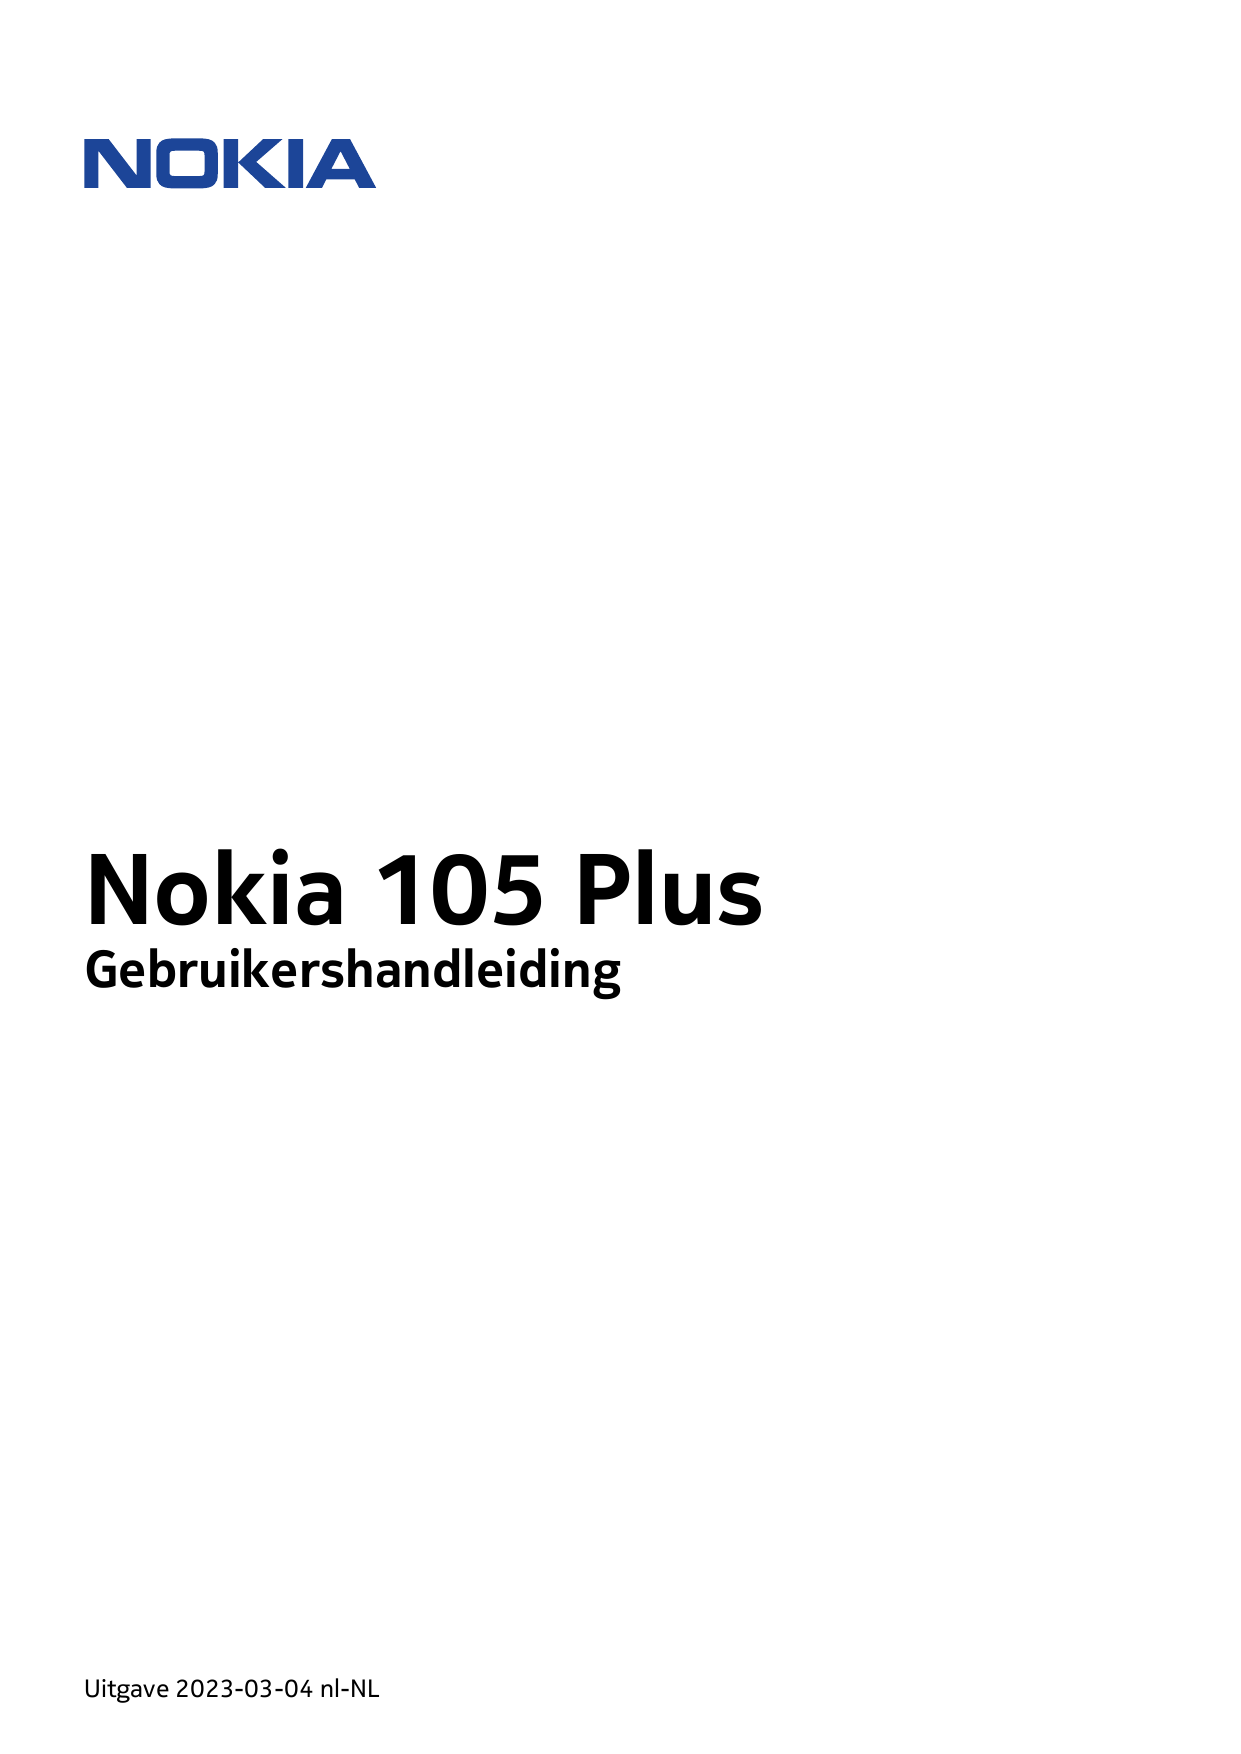 Nokia 105 PlusGebruikershandleidingUitgave 2023-03-04 nl-NL